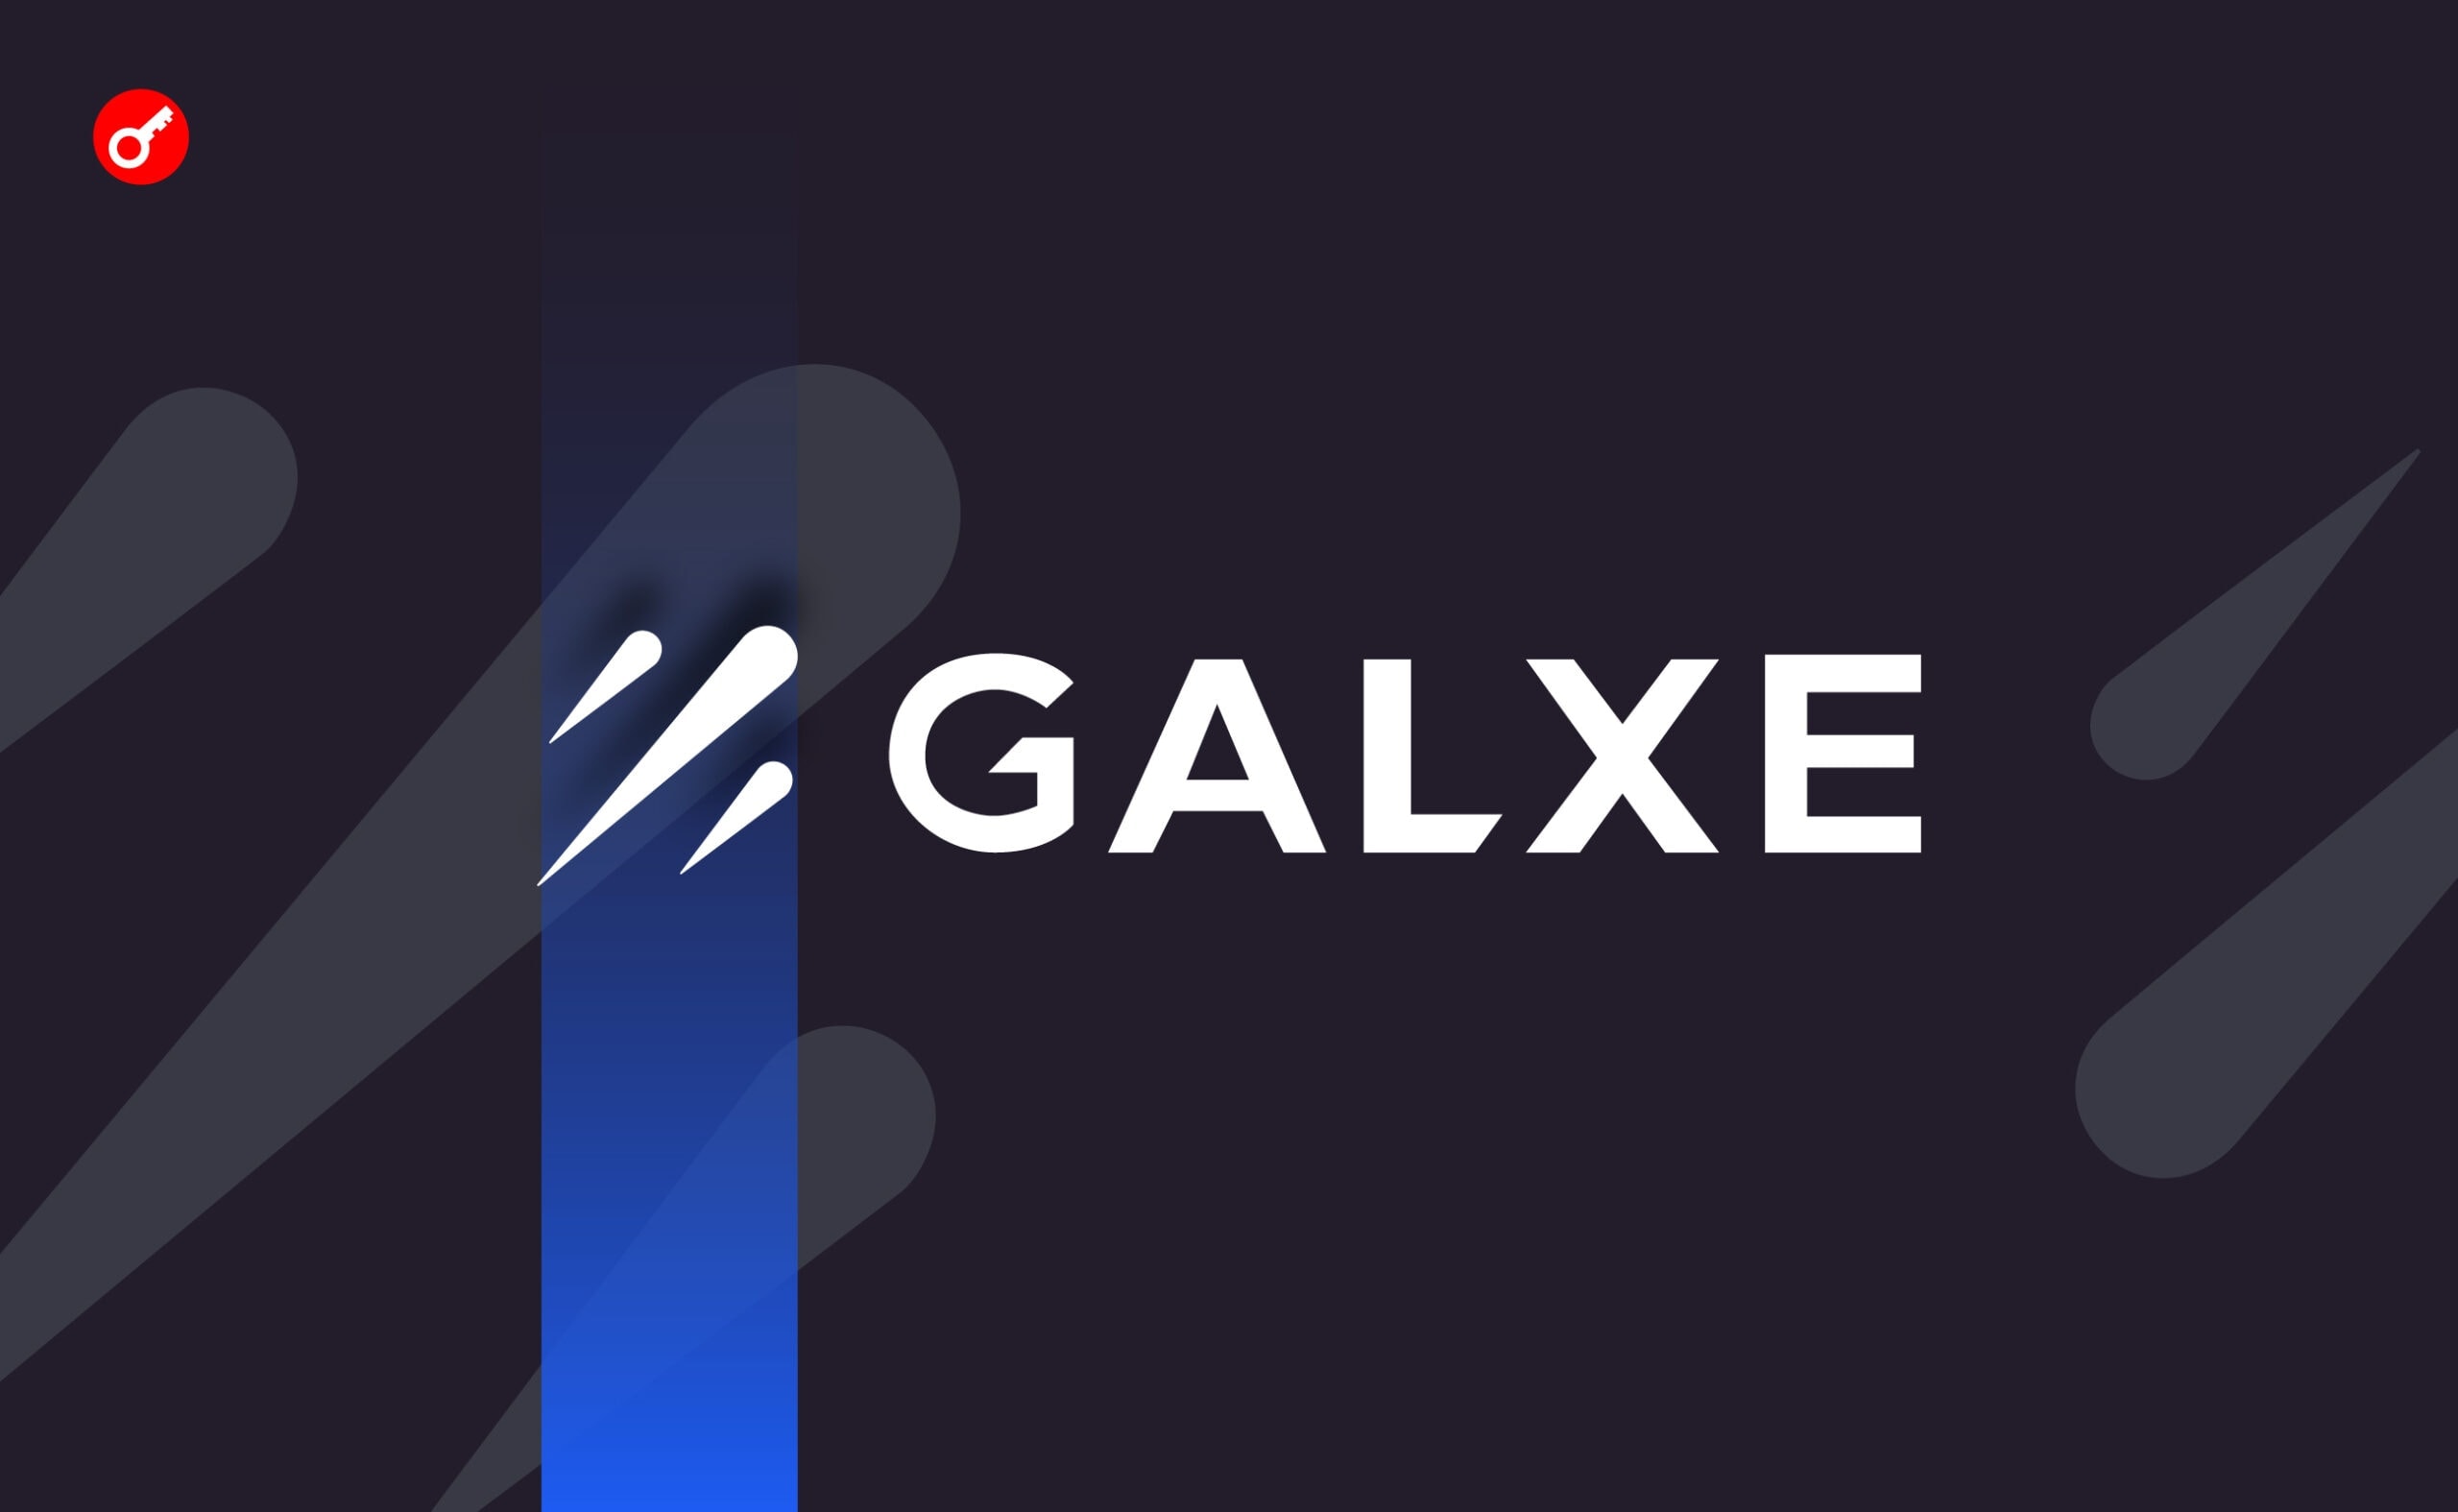 Сайт Galxe припинив роботу. В мережі повідомили про можливий злам. Головний колаж новини.